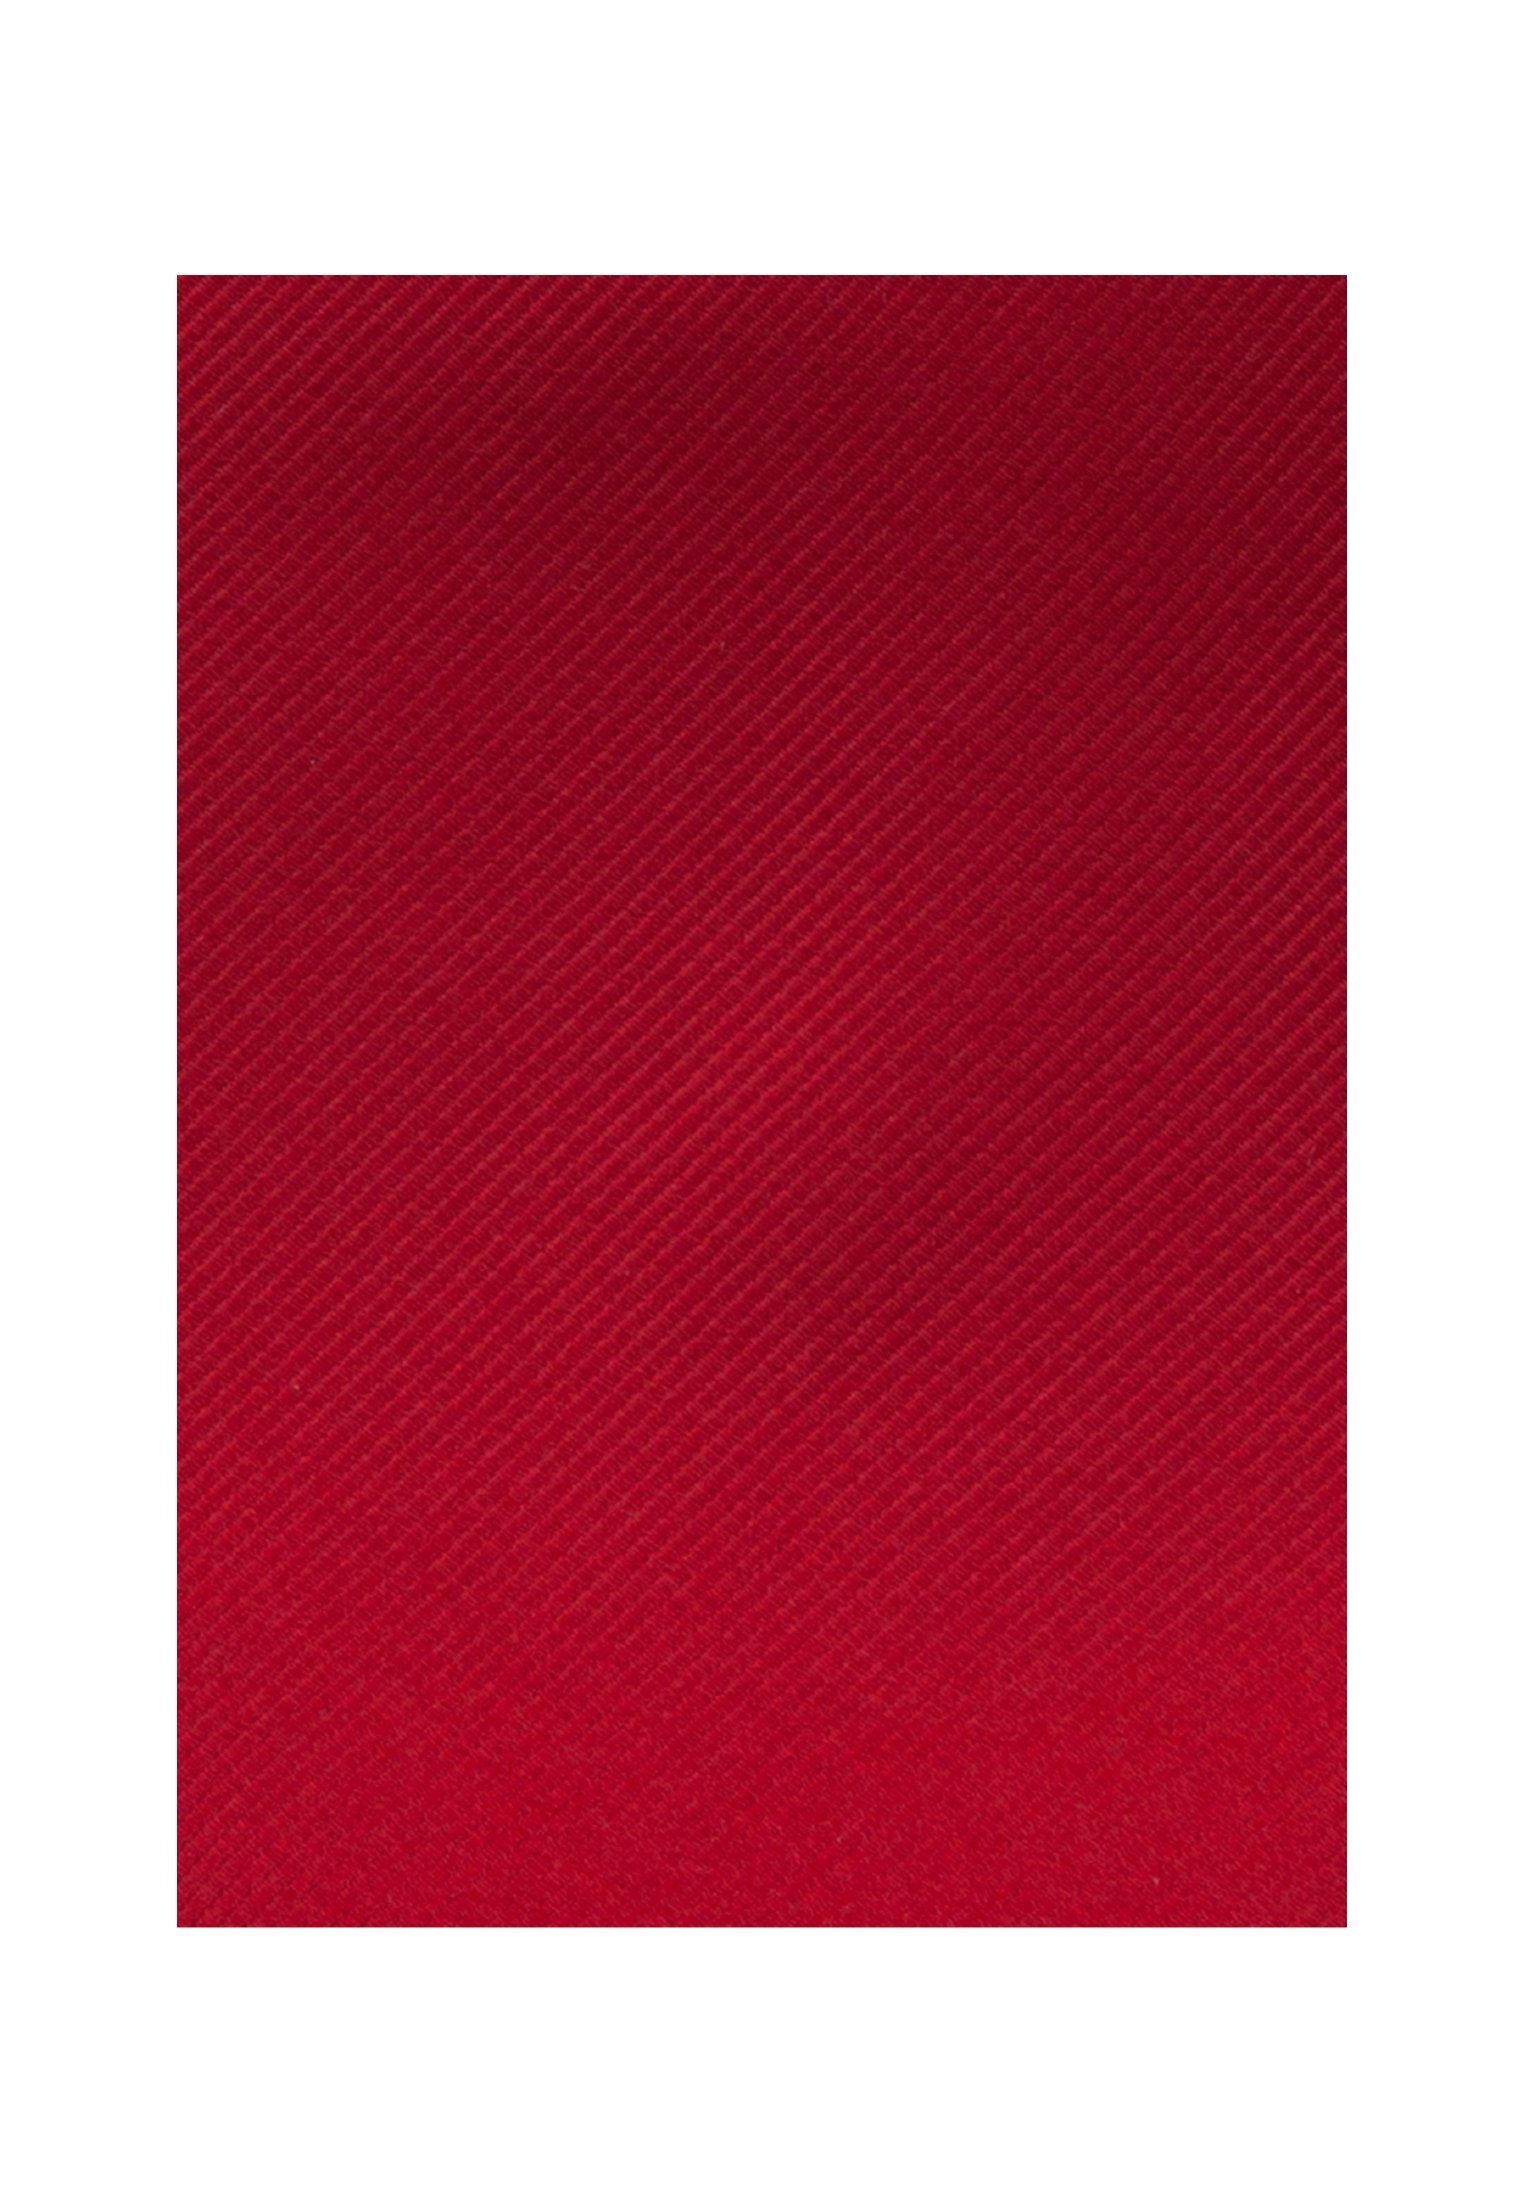 Breit Rose seidensticker Uni Schwarze Rot Krawatte (7cm)